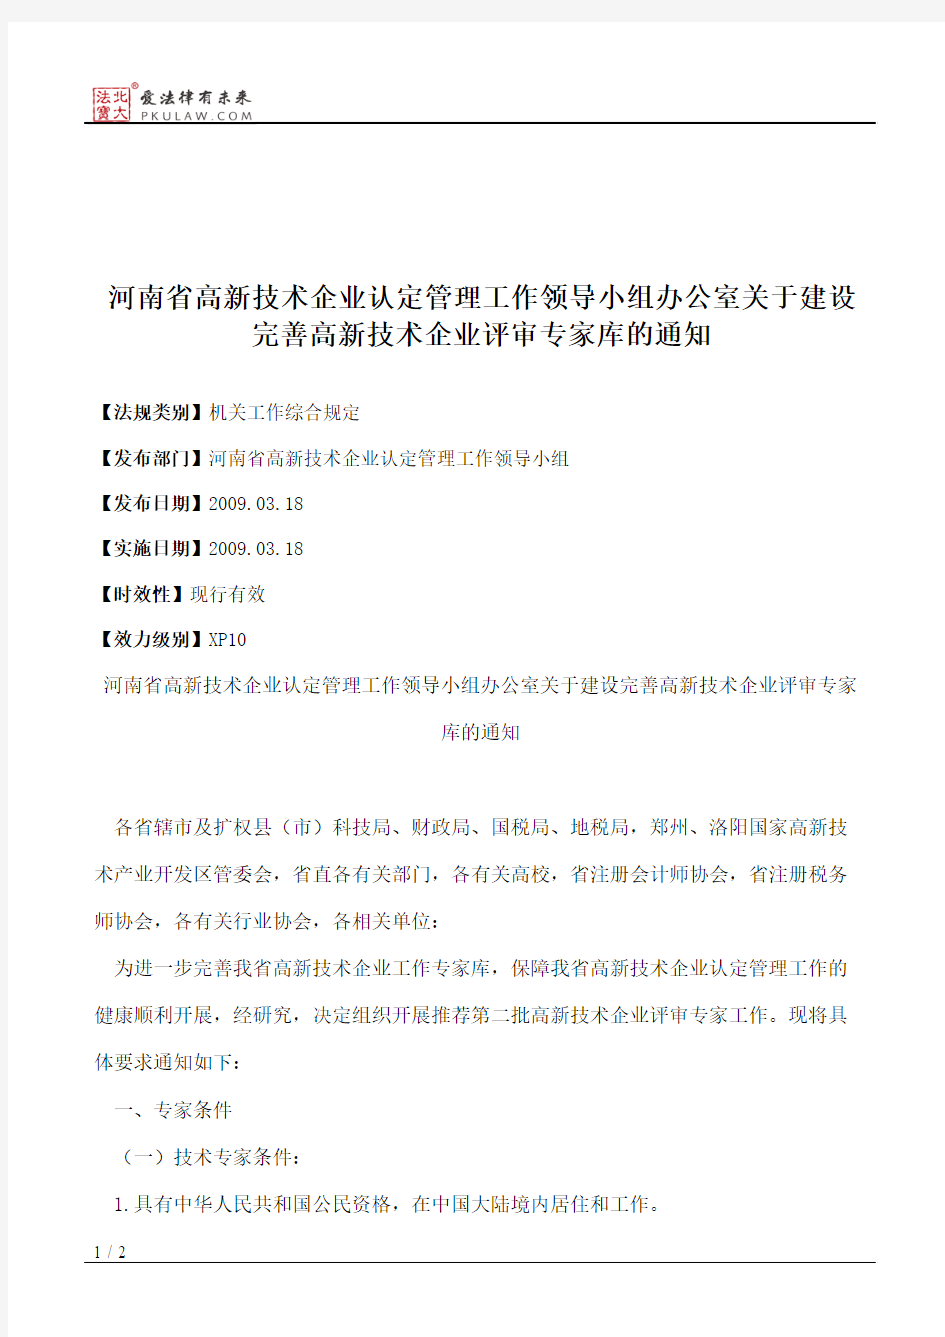 河南省高新技术企业认定管理工作领导小组办公室关于建设完善高新